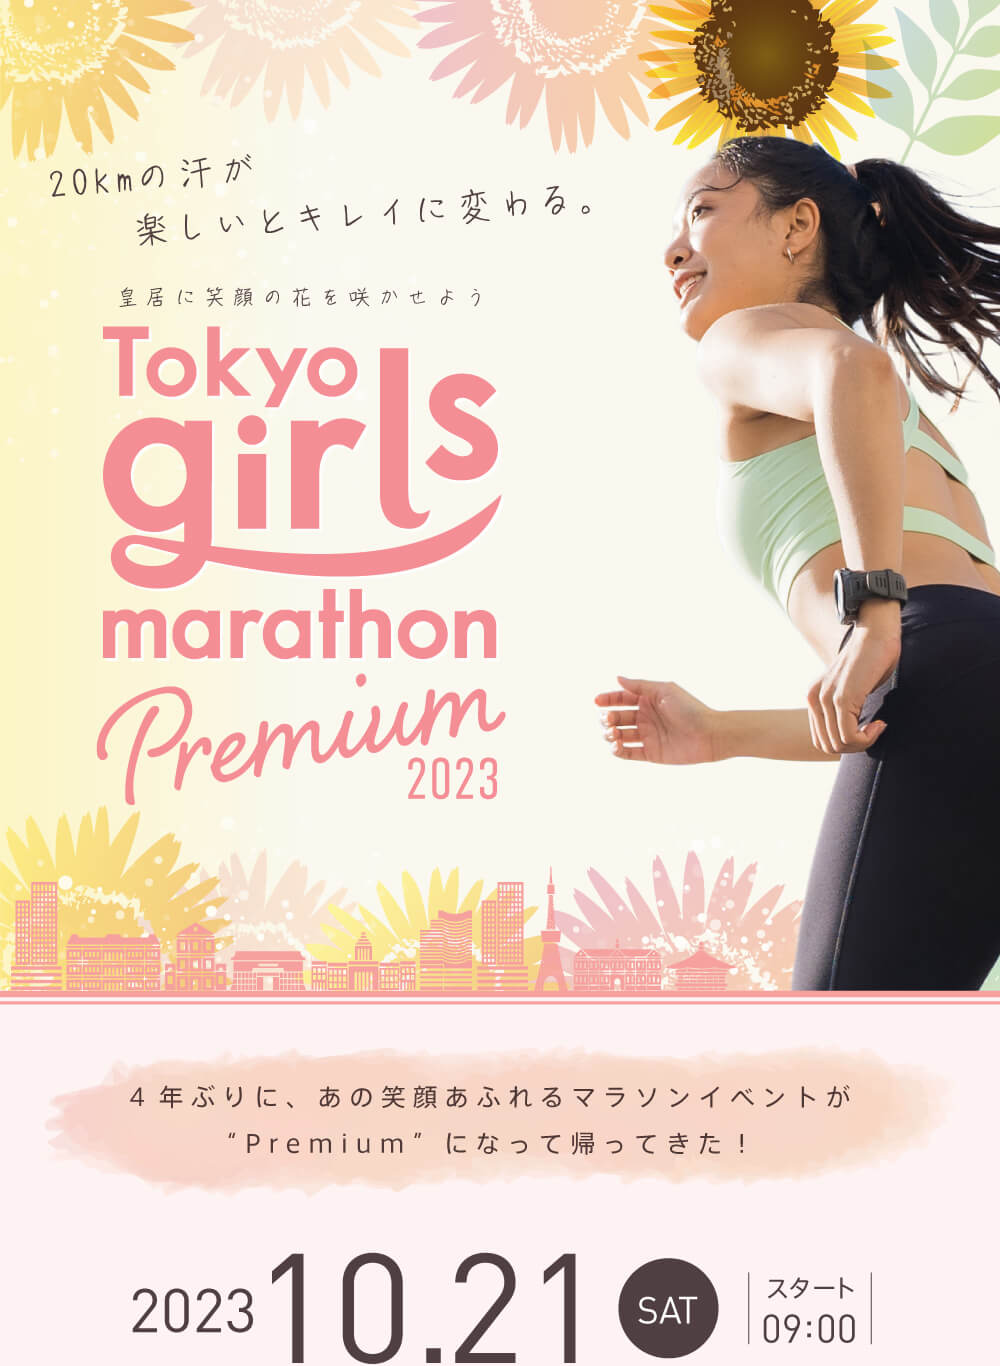 Tokyo girls marathon 2023 info_01